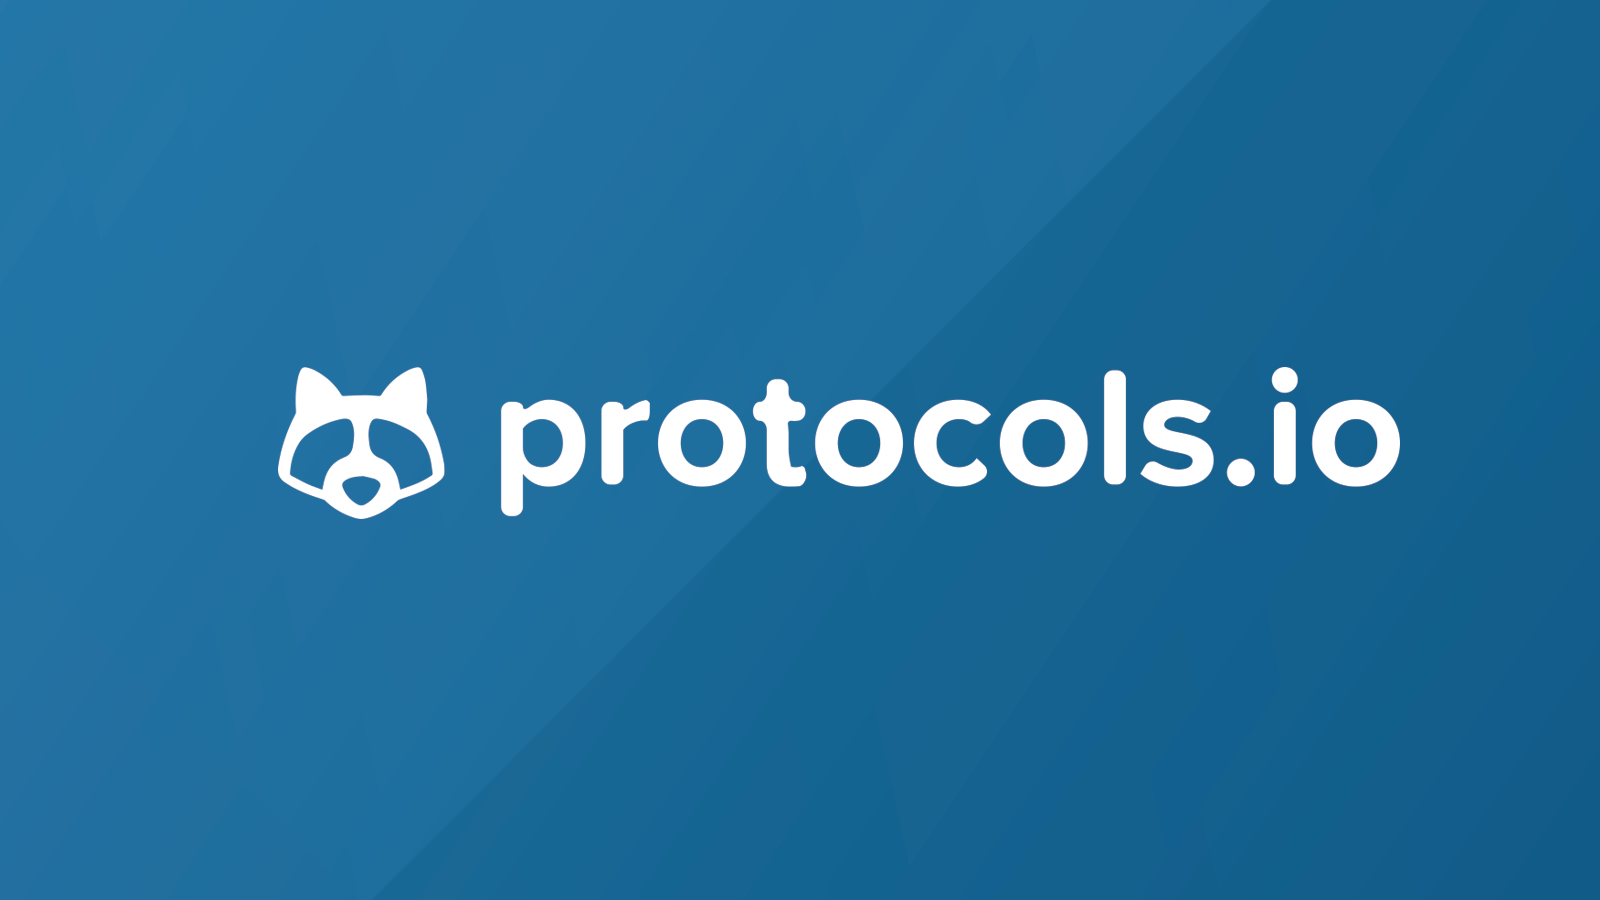 www.protocols.io